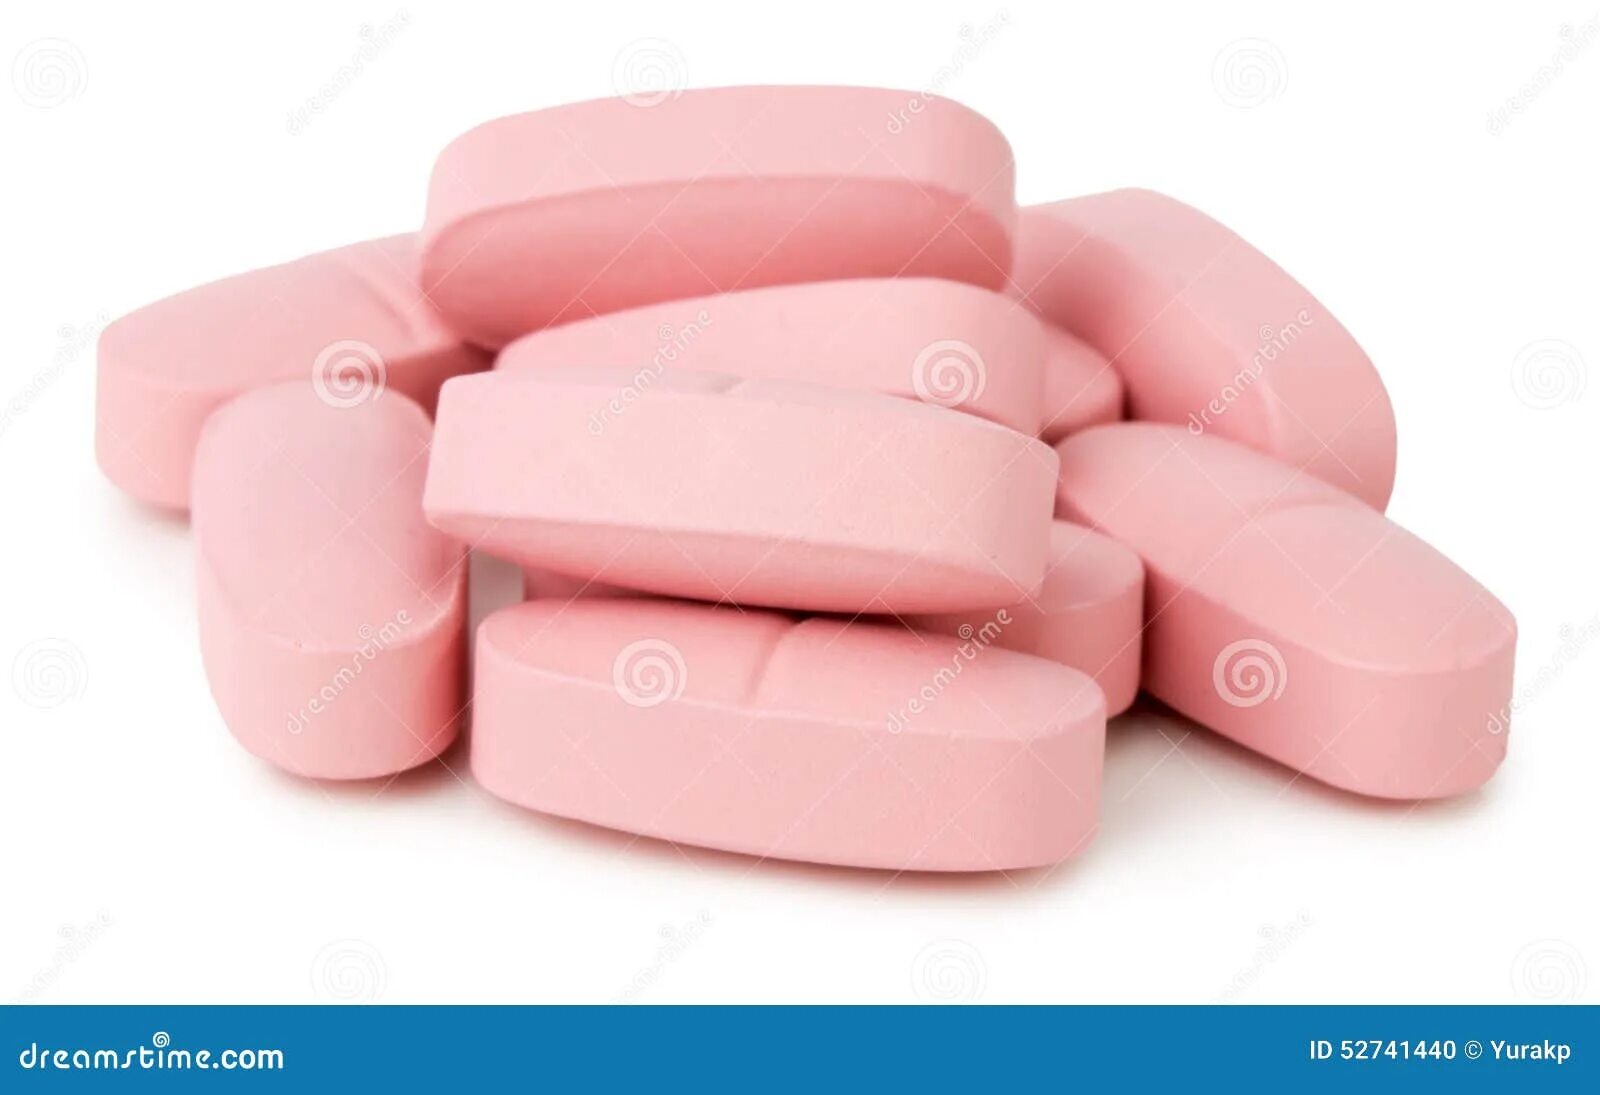 Розово белая таблетка. Розовые таблетки. Таблетки розового цвета. Большая розовая таблетка. Розовые плоские таблетки.